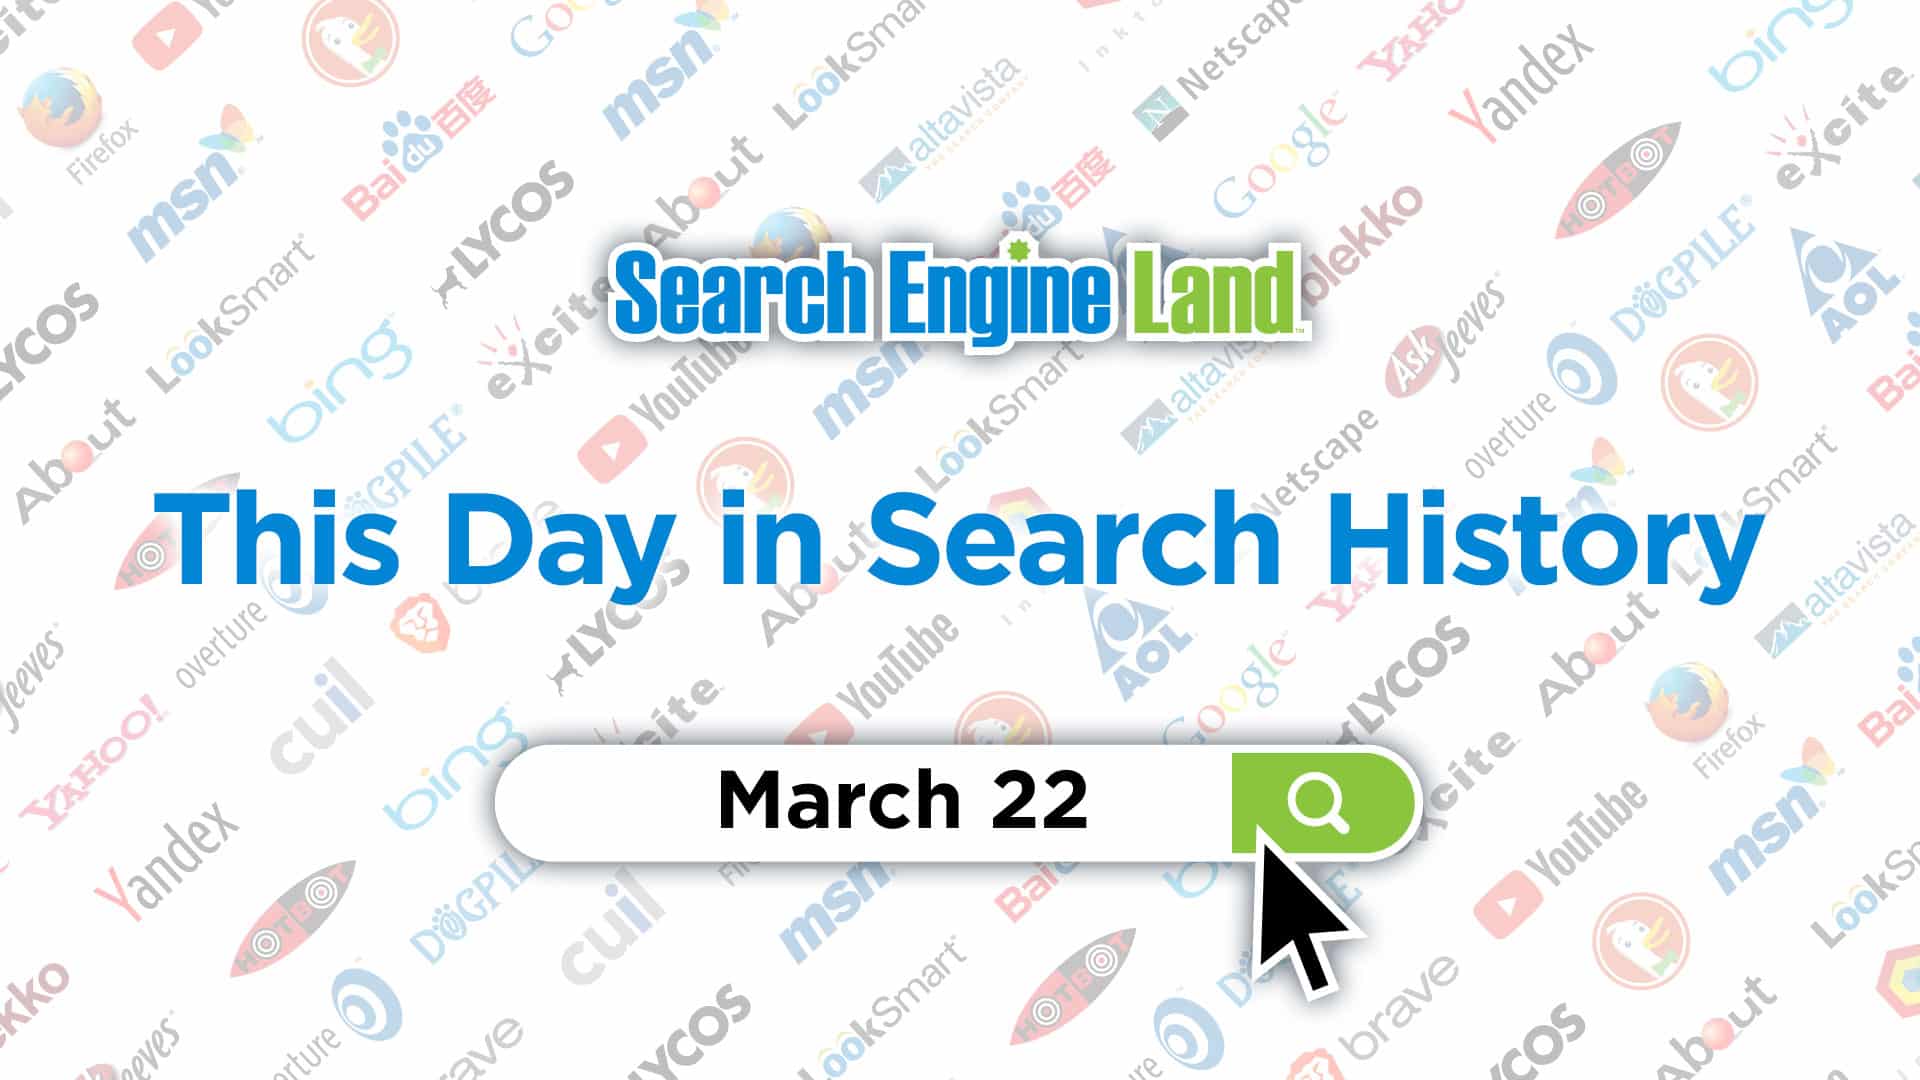 این روز در تاریخچه بازاریابی جستجو: 22 مارس, محتوا مارکتینگ